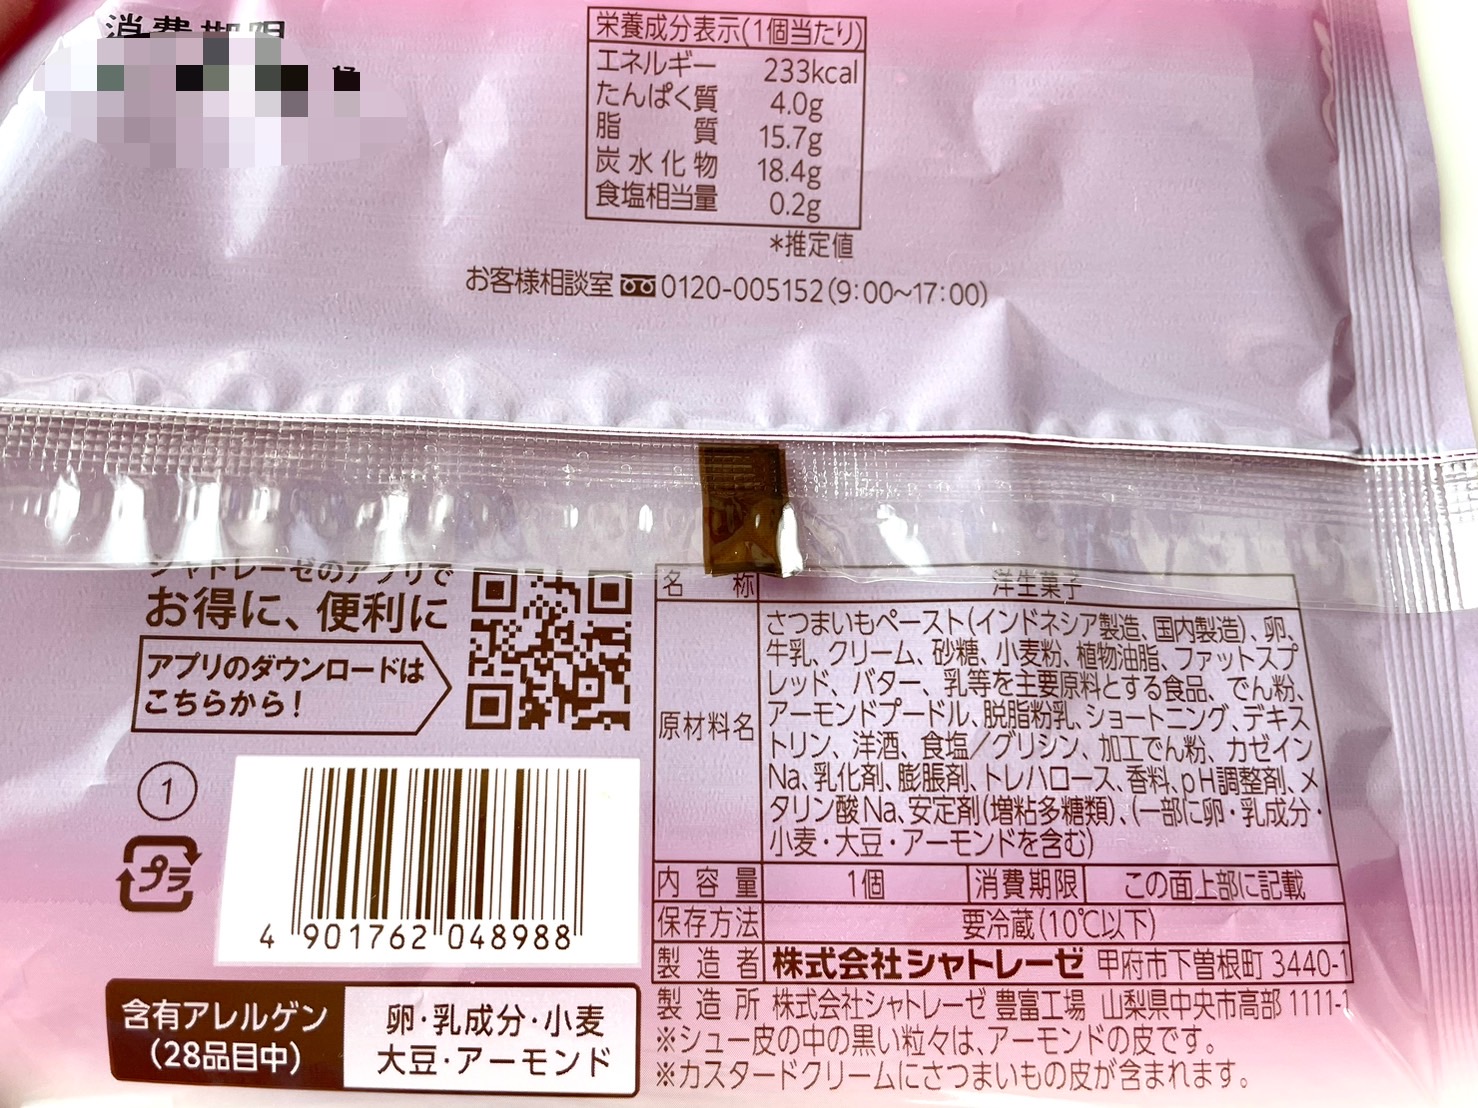 ダブルシュークリーム焼き芋
パッケージ裏情報